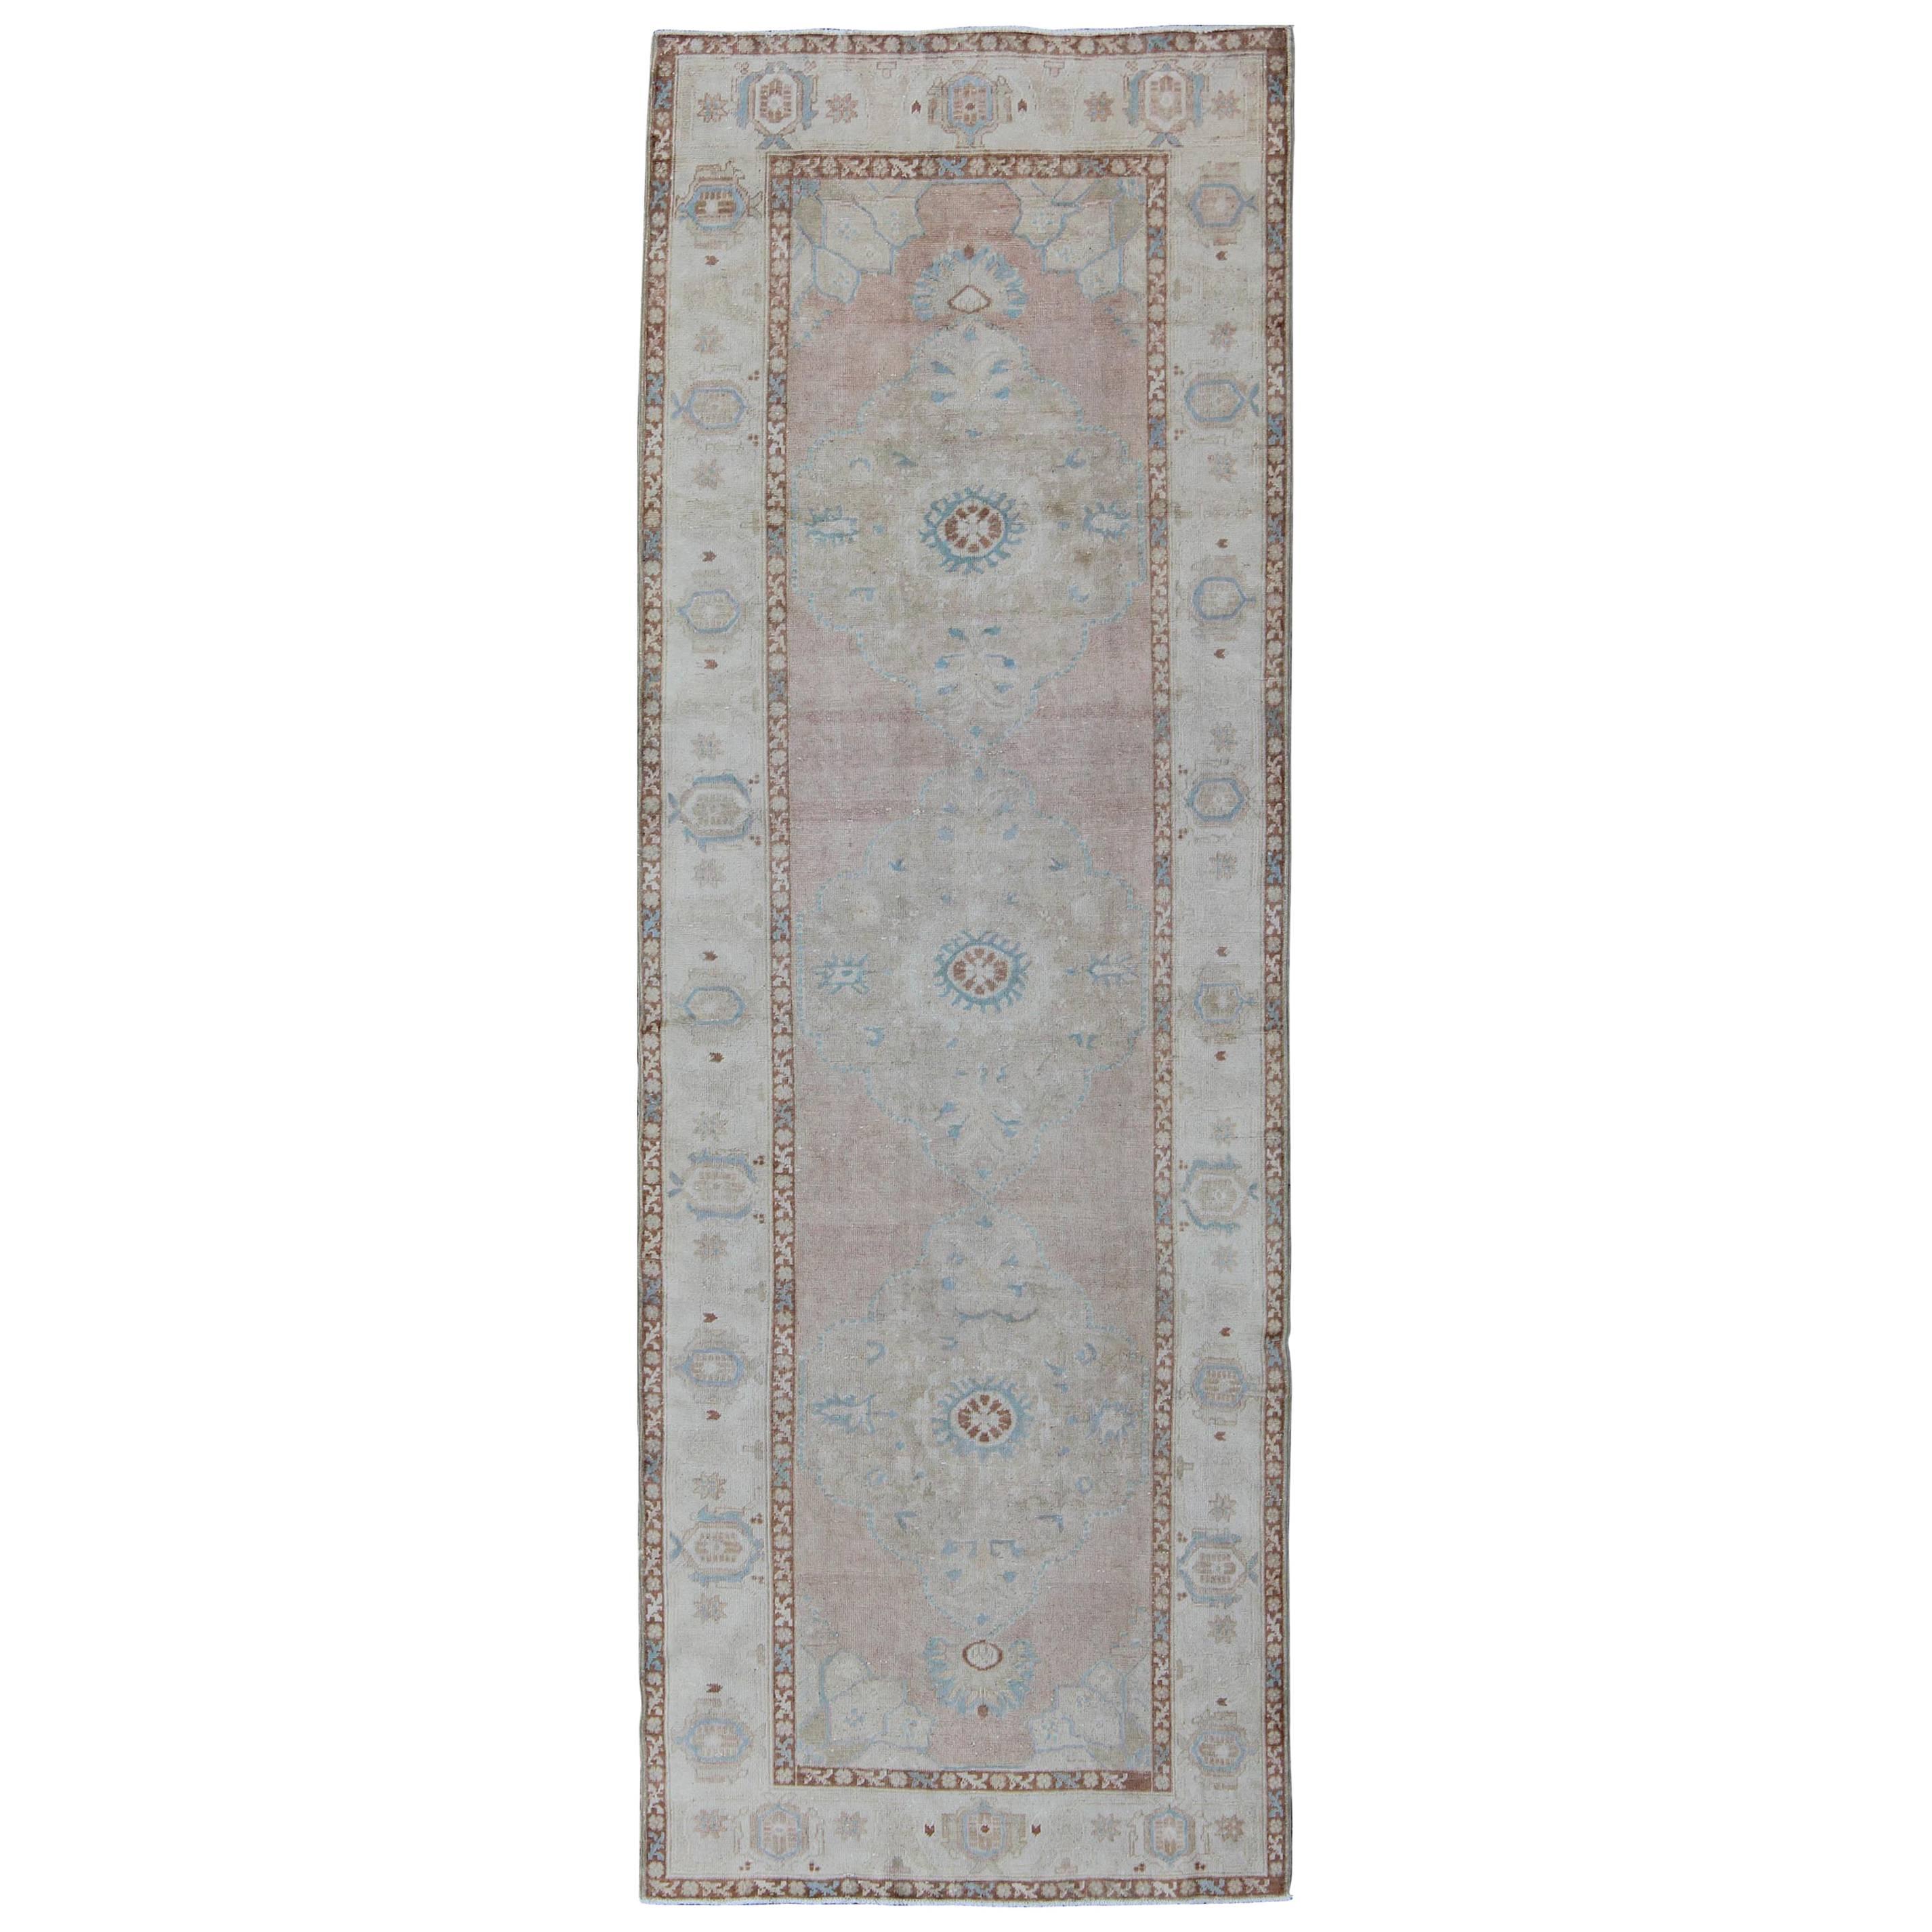 Vieux tapis de couloir turc Oushak rose pâle, bleu clair et ivoire